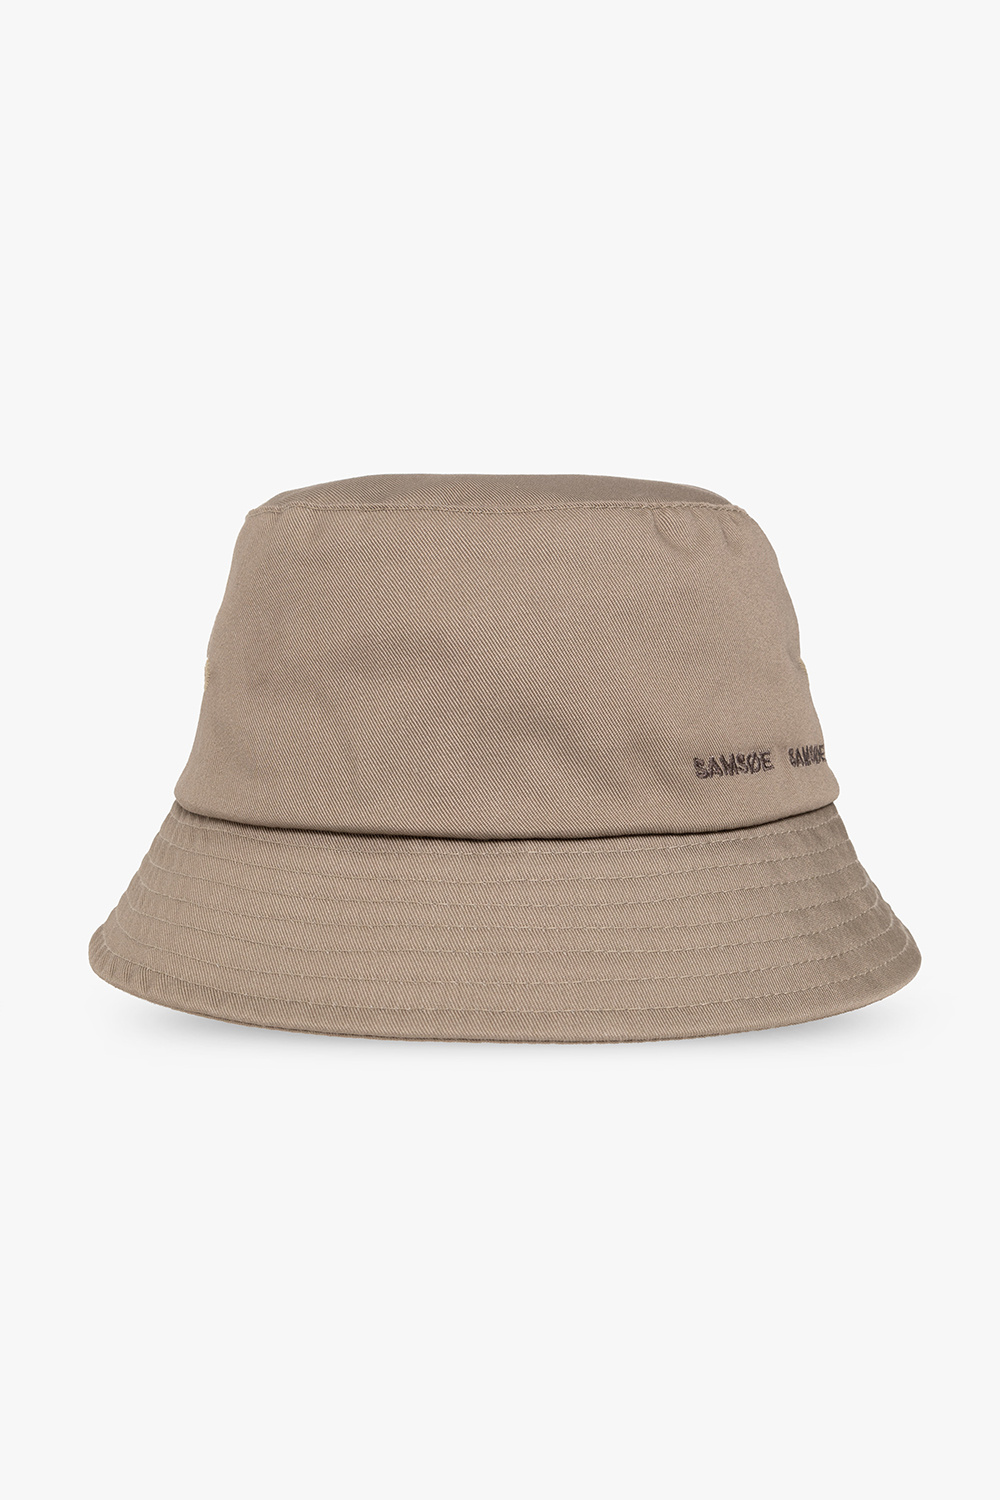 Samsøe Samsøe ‘Anton’ bucket hat Boonie with logo